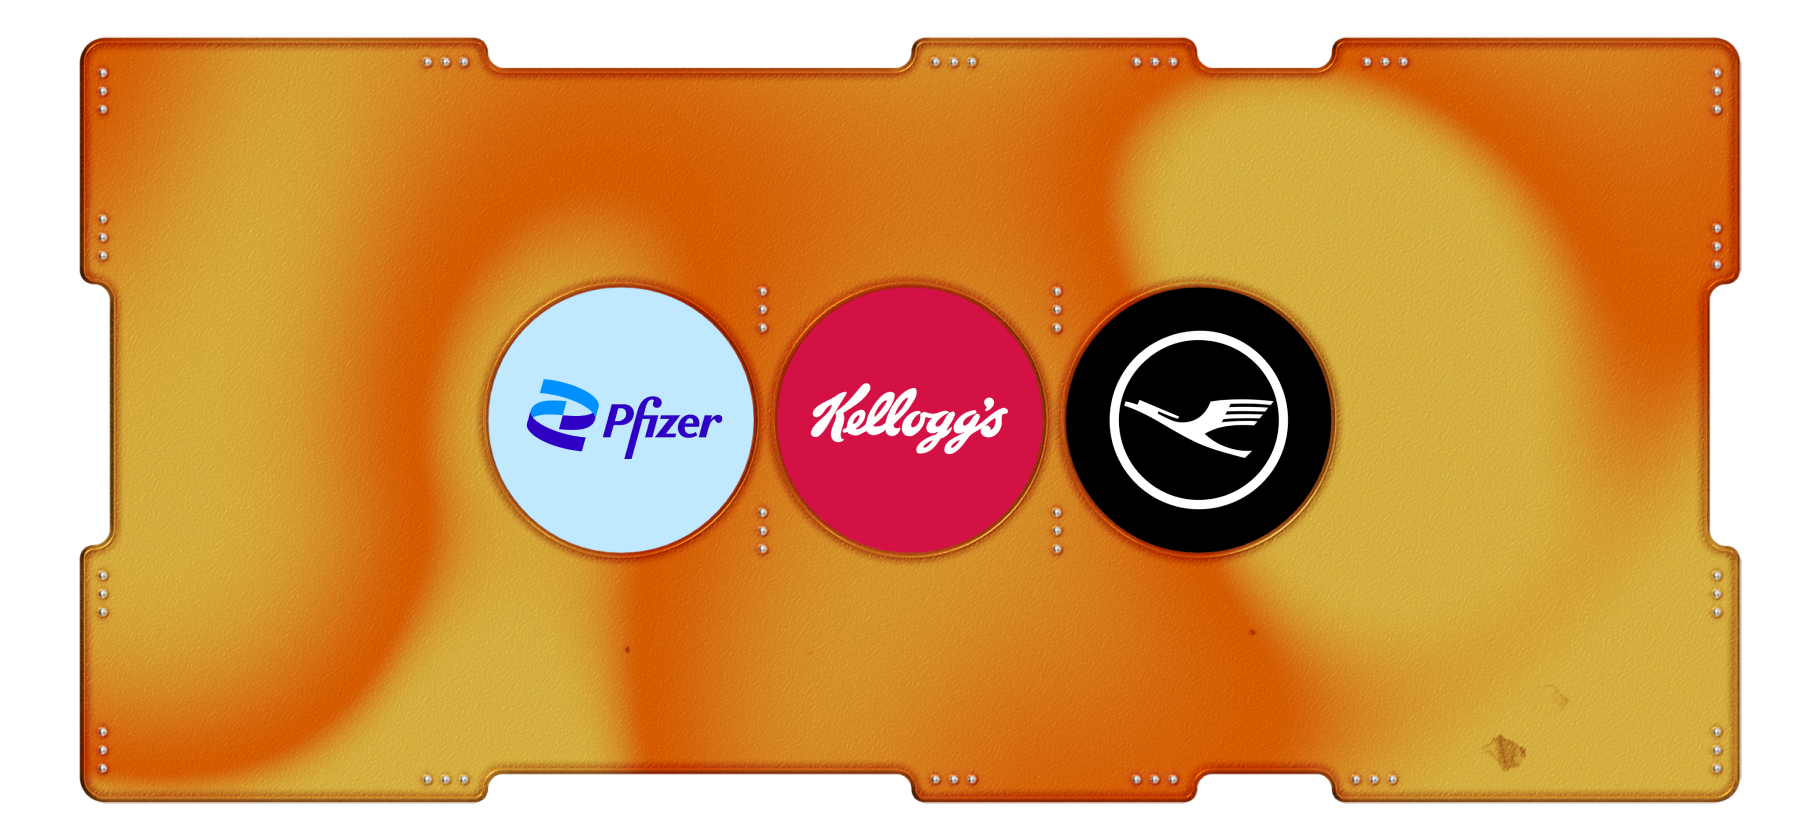 Календарь инвестора: Pfizer, Kellogg и Lufthansa выпустят отчеты